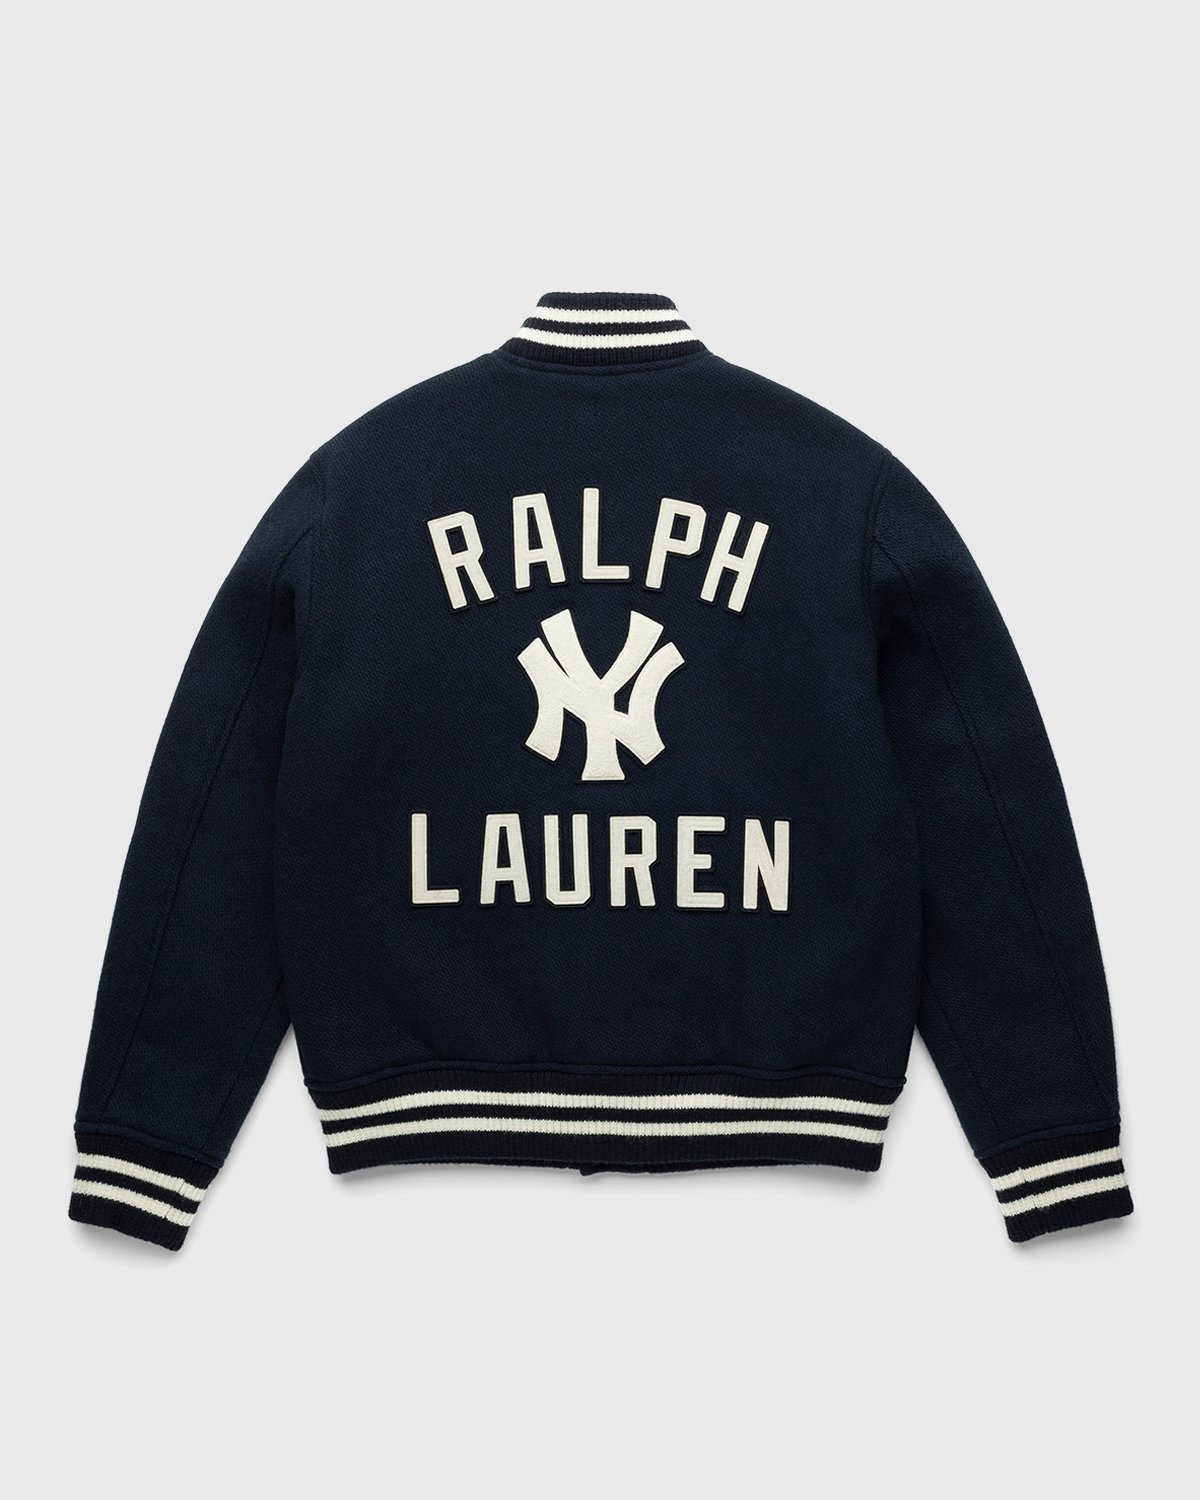 Ralph Lauren Going Back to Basics